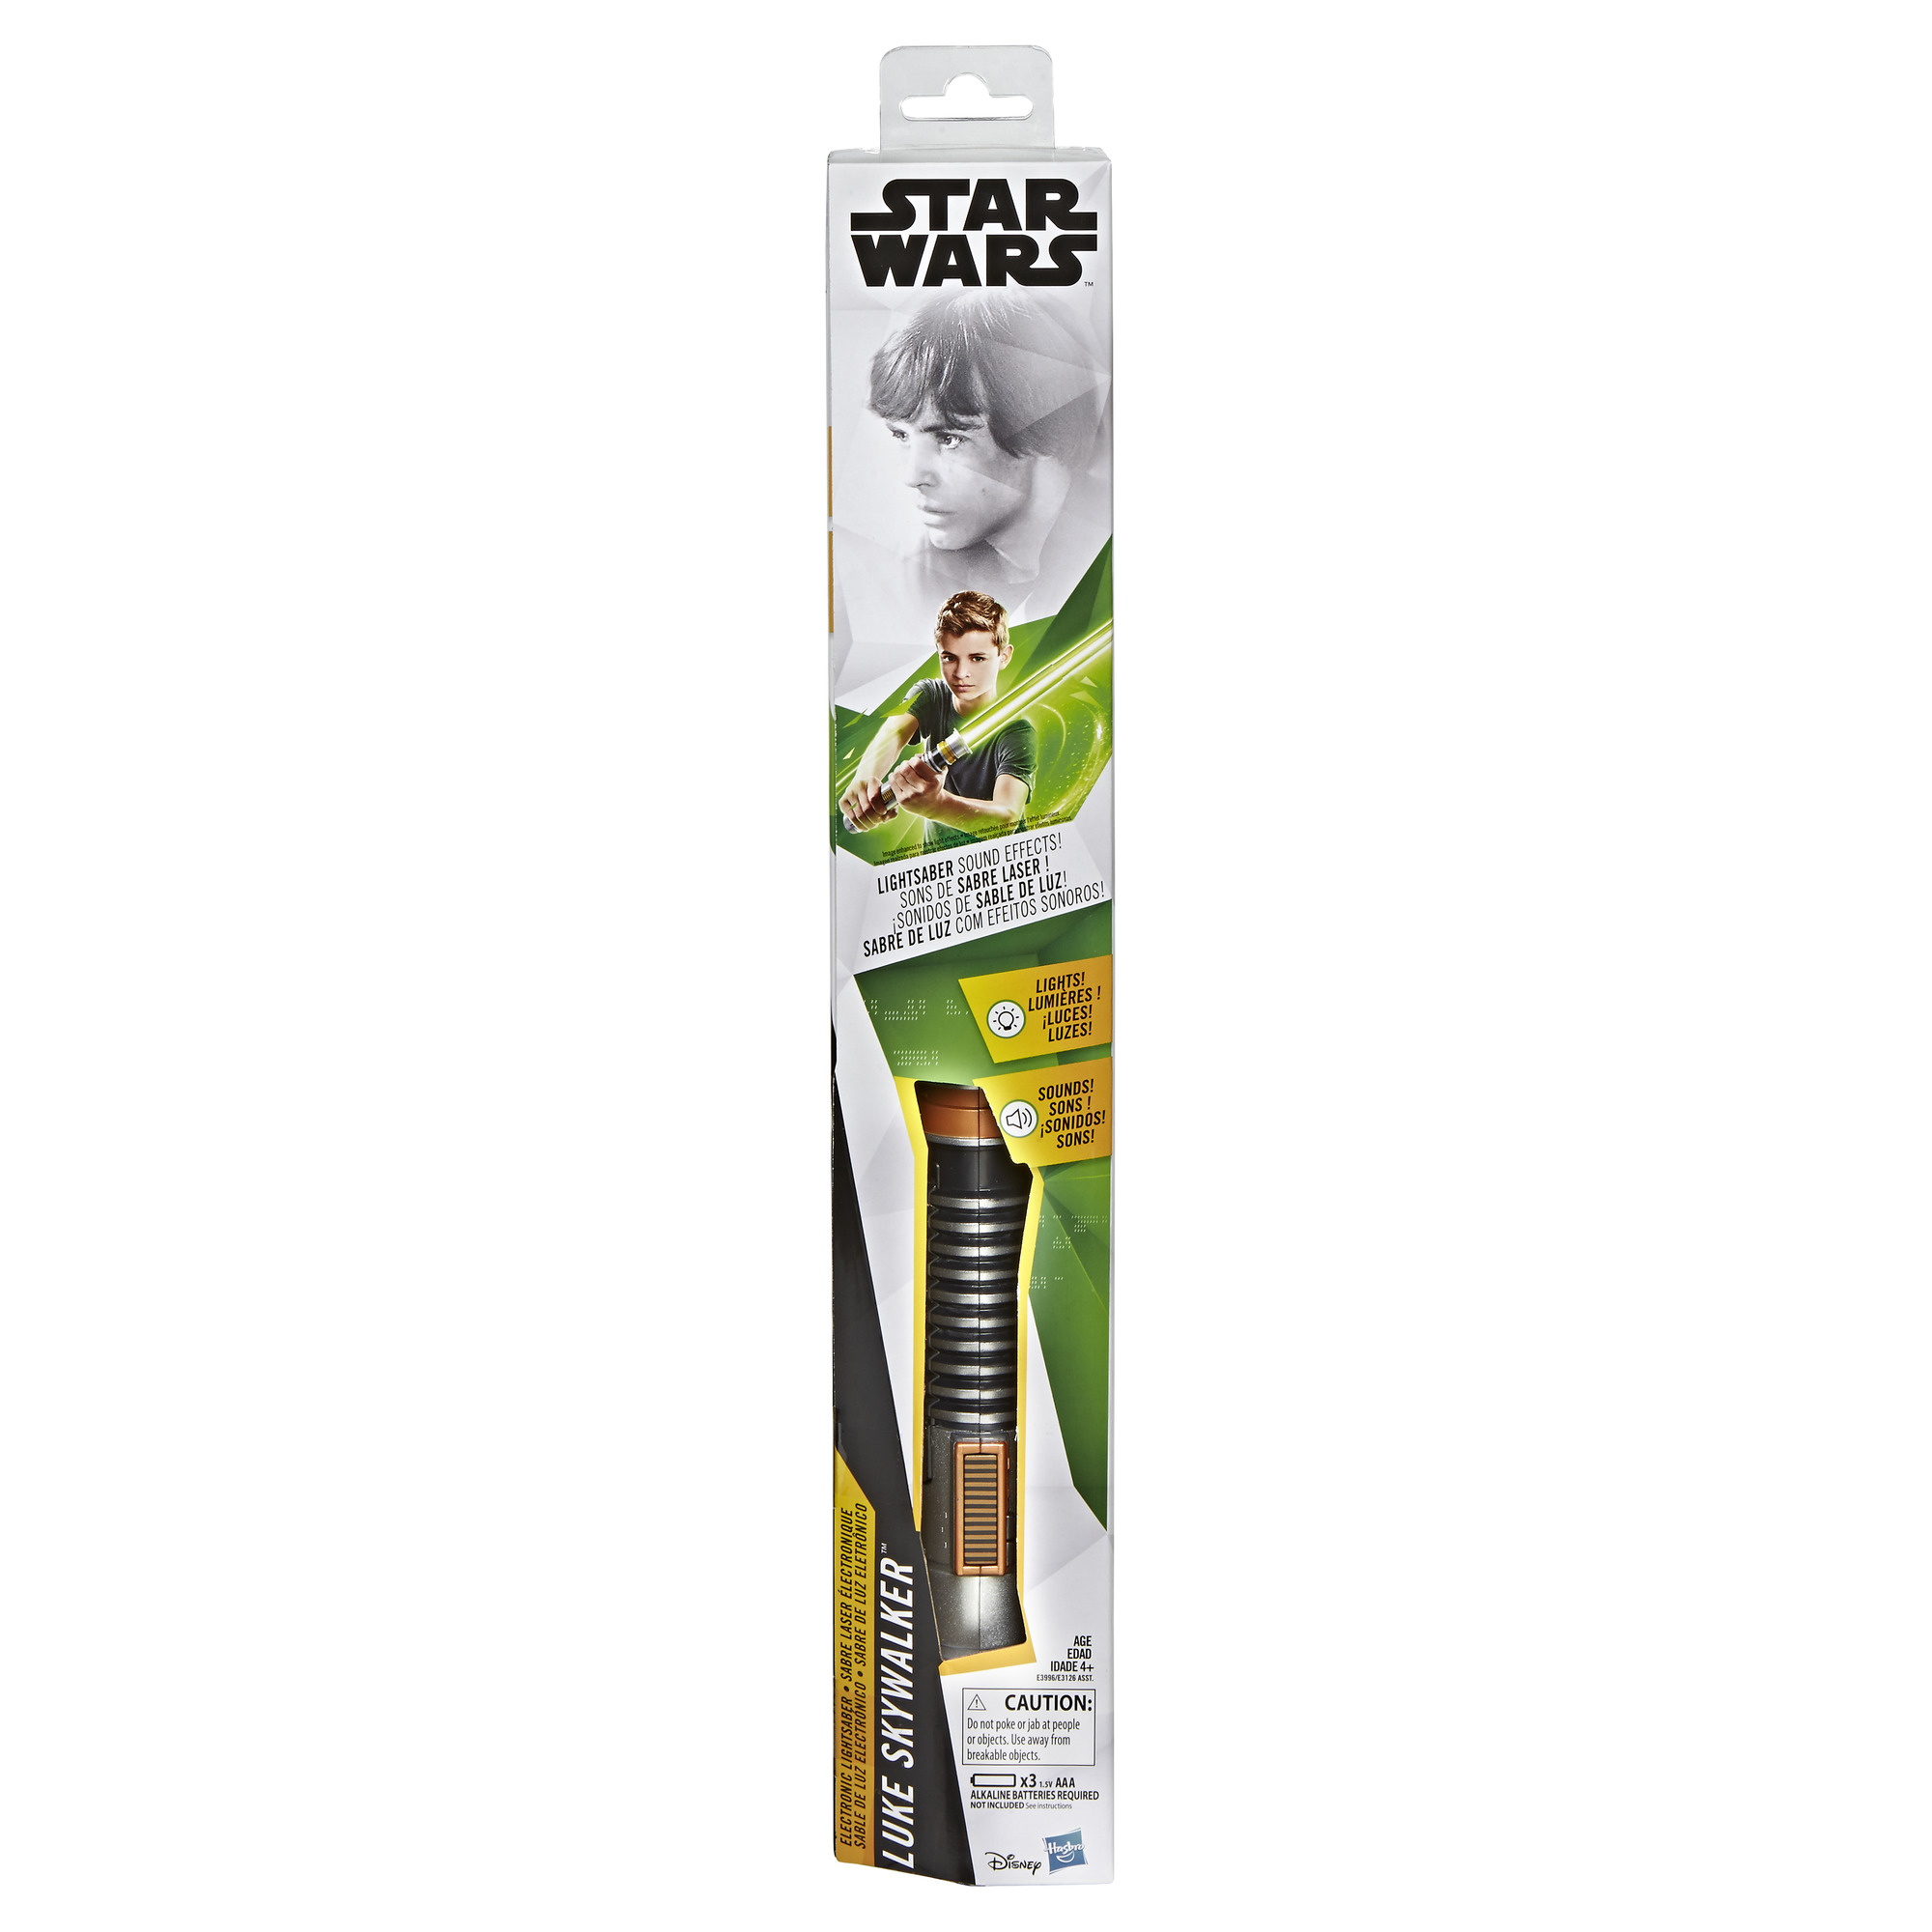 TROS (ROTJ) Luke Skywalker Electronic Green Lightsaber Toy 1